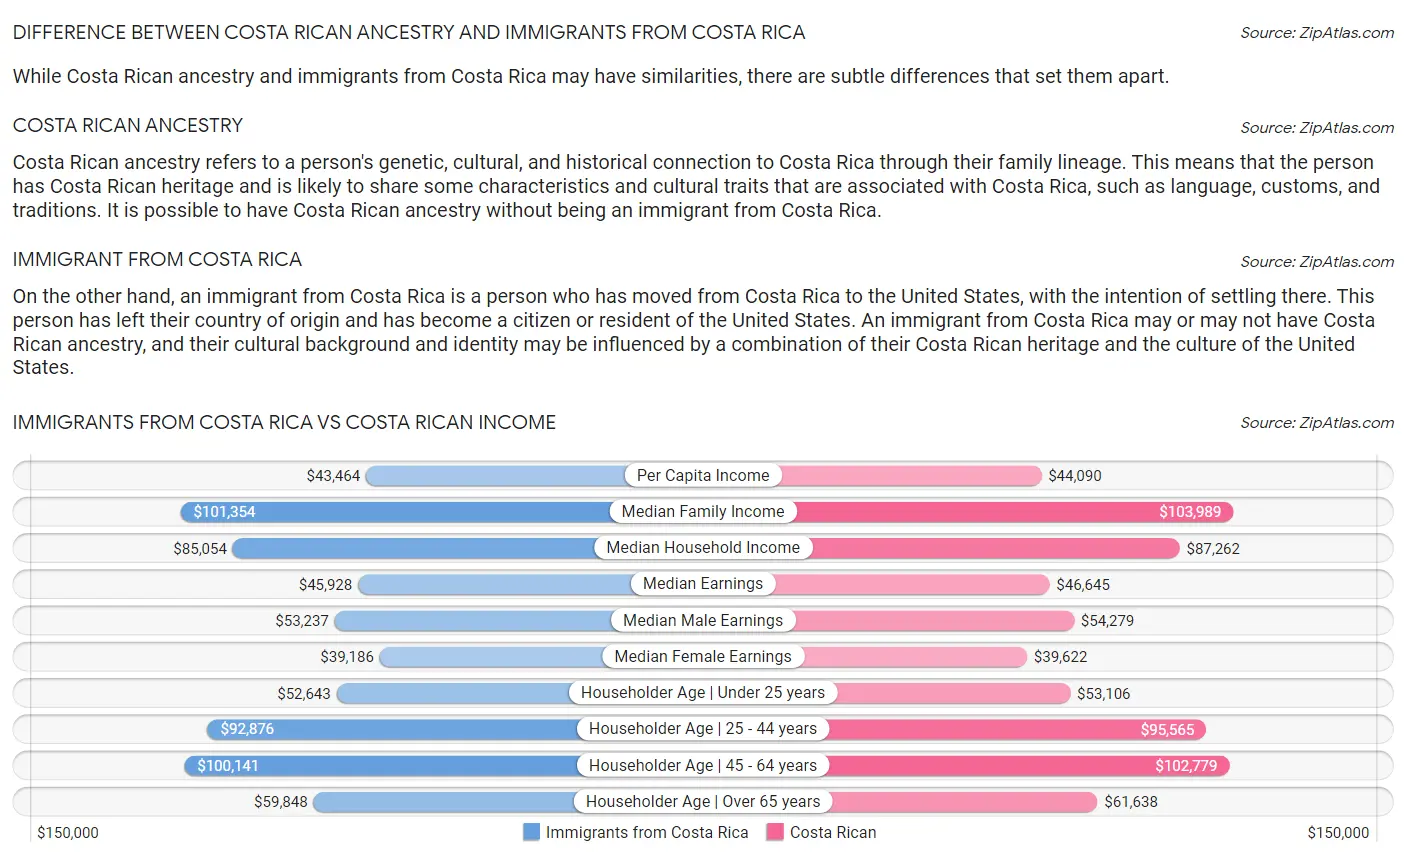 Immigrants from Costa Rica vs Costa Rican Income